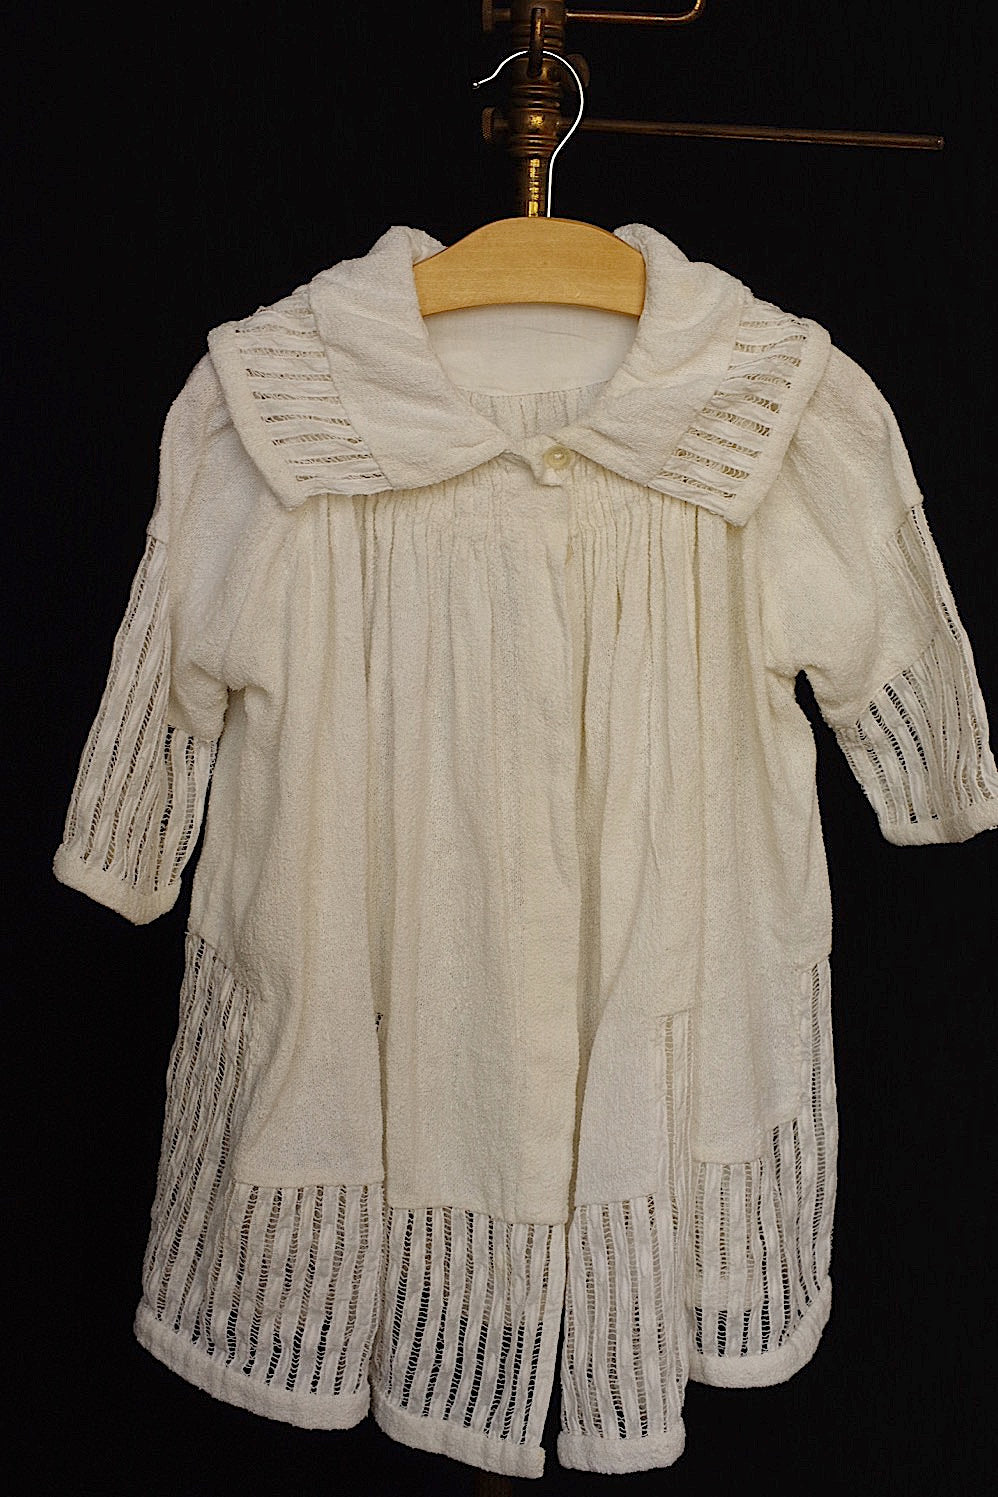 vetement d'enfant antique antique children's clothing coat 